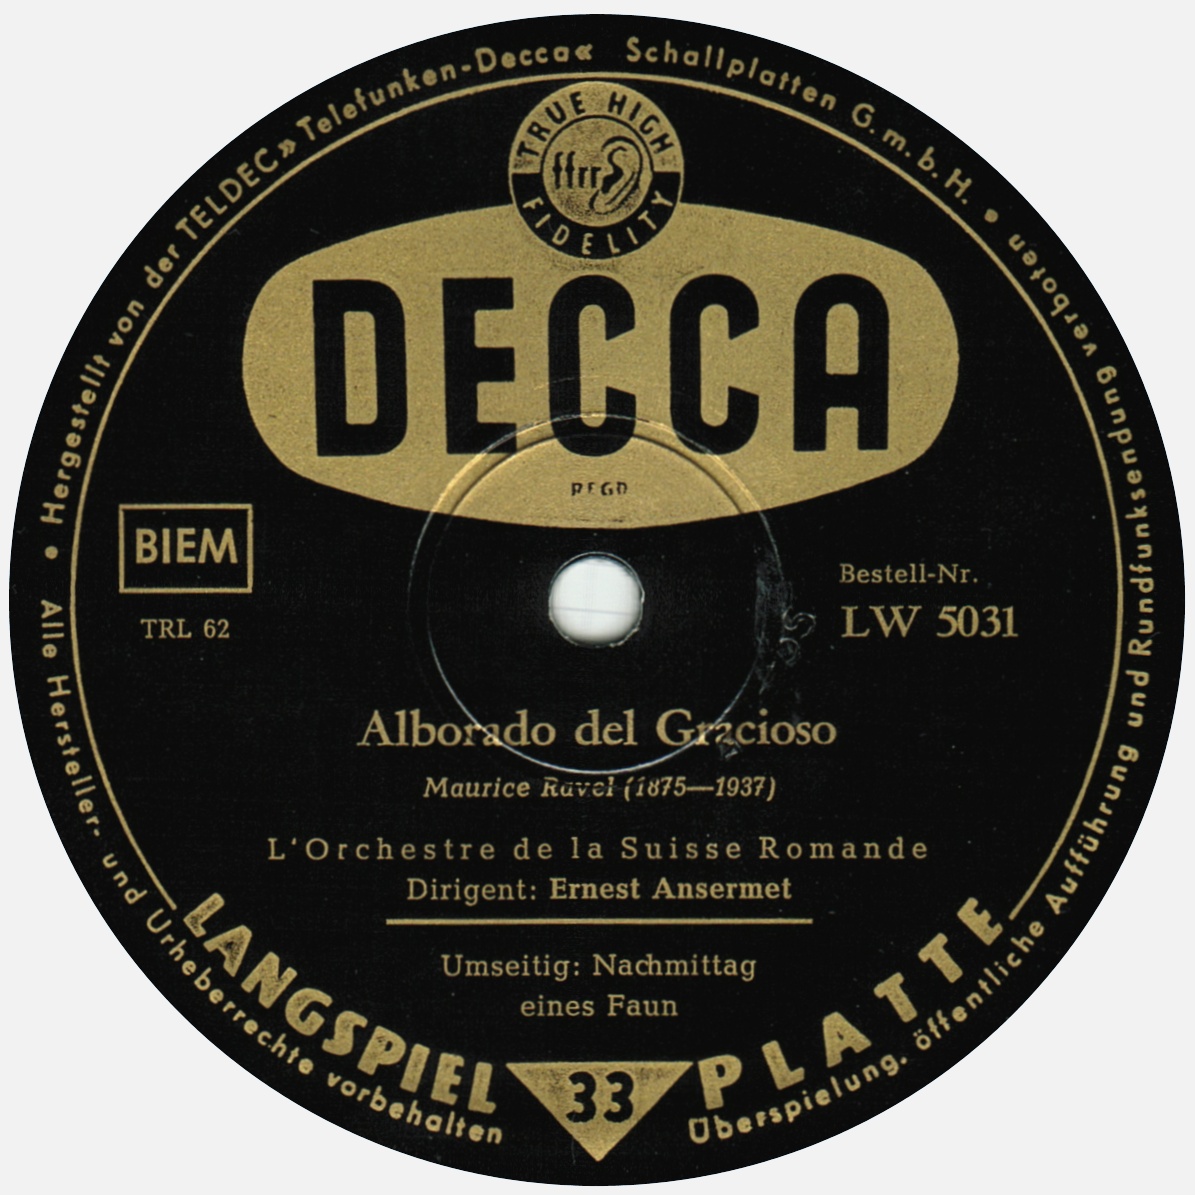 Decca LW 5031, étiquette verso édition CH/D, cliquer pour une vue agrandie